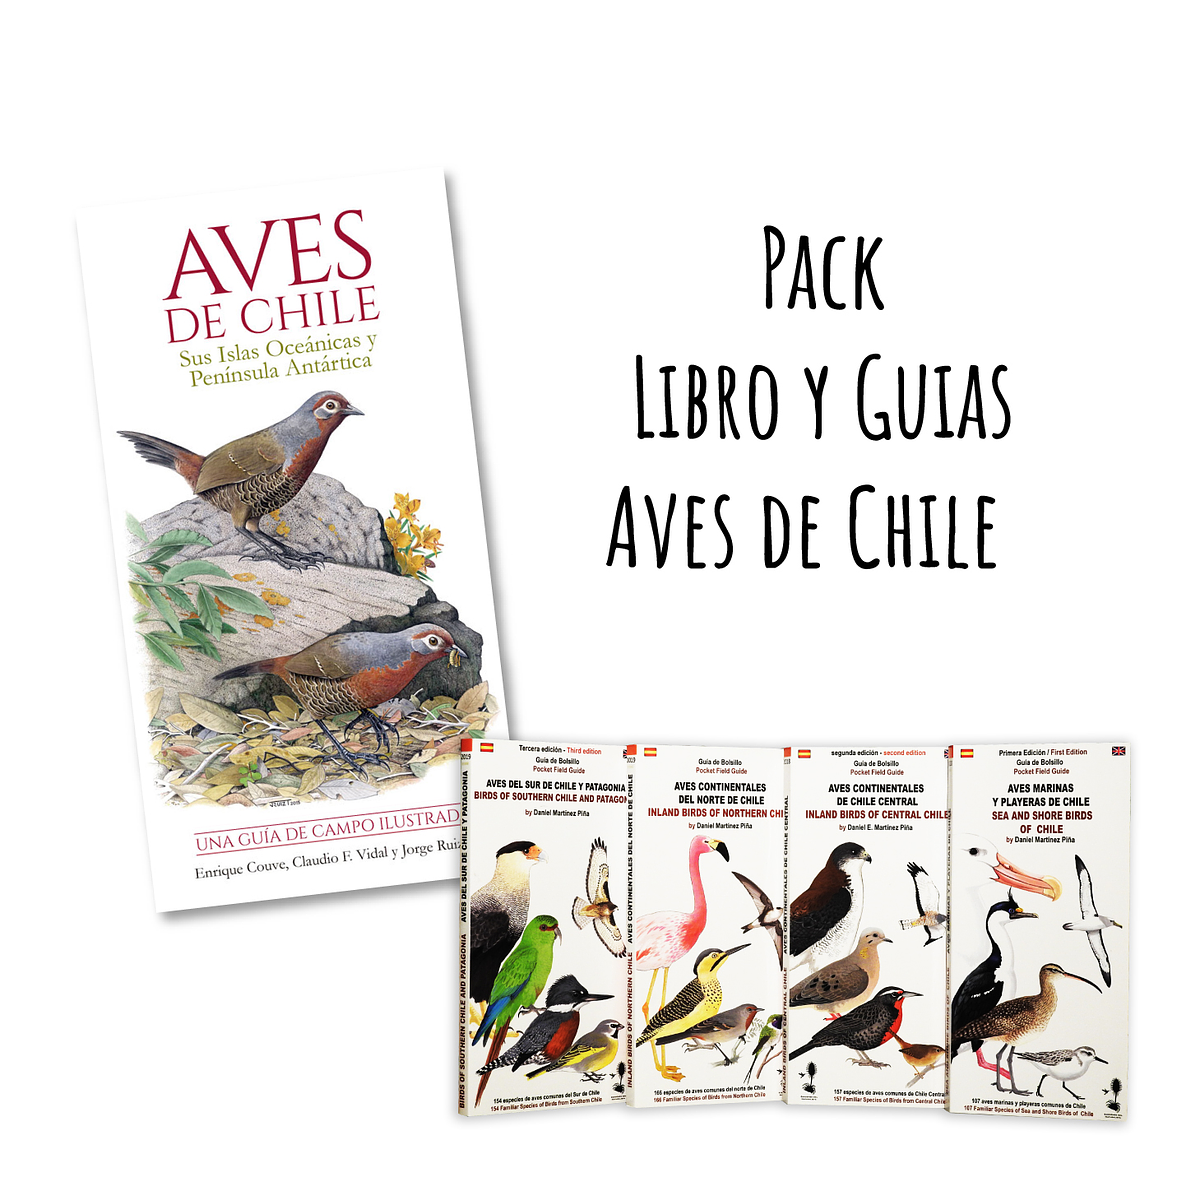 Escritor judío Bienes Pack Libro y Guias Aves de Chile (Despachos de...